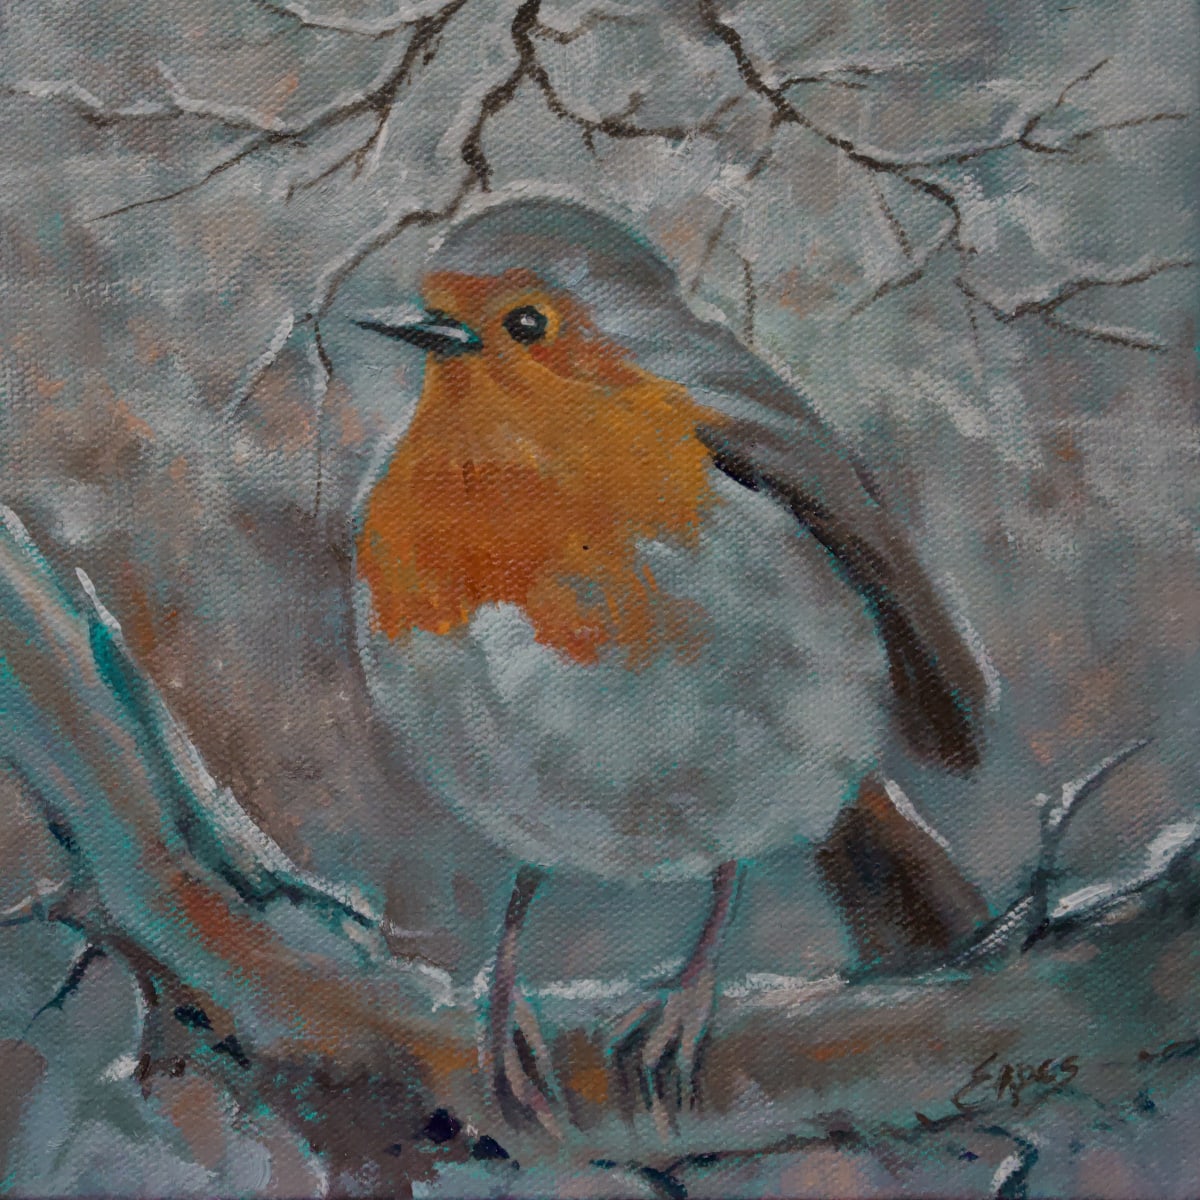 Snowy Perch by Linda Eades Blackburn 